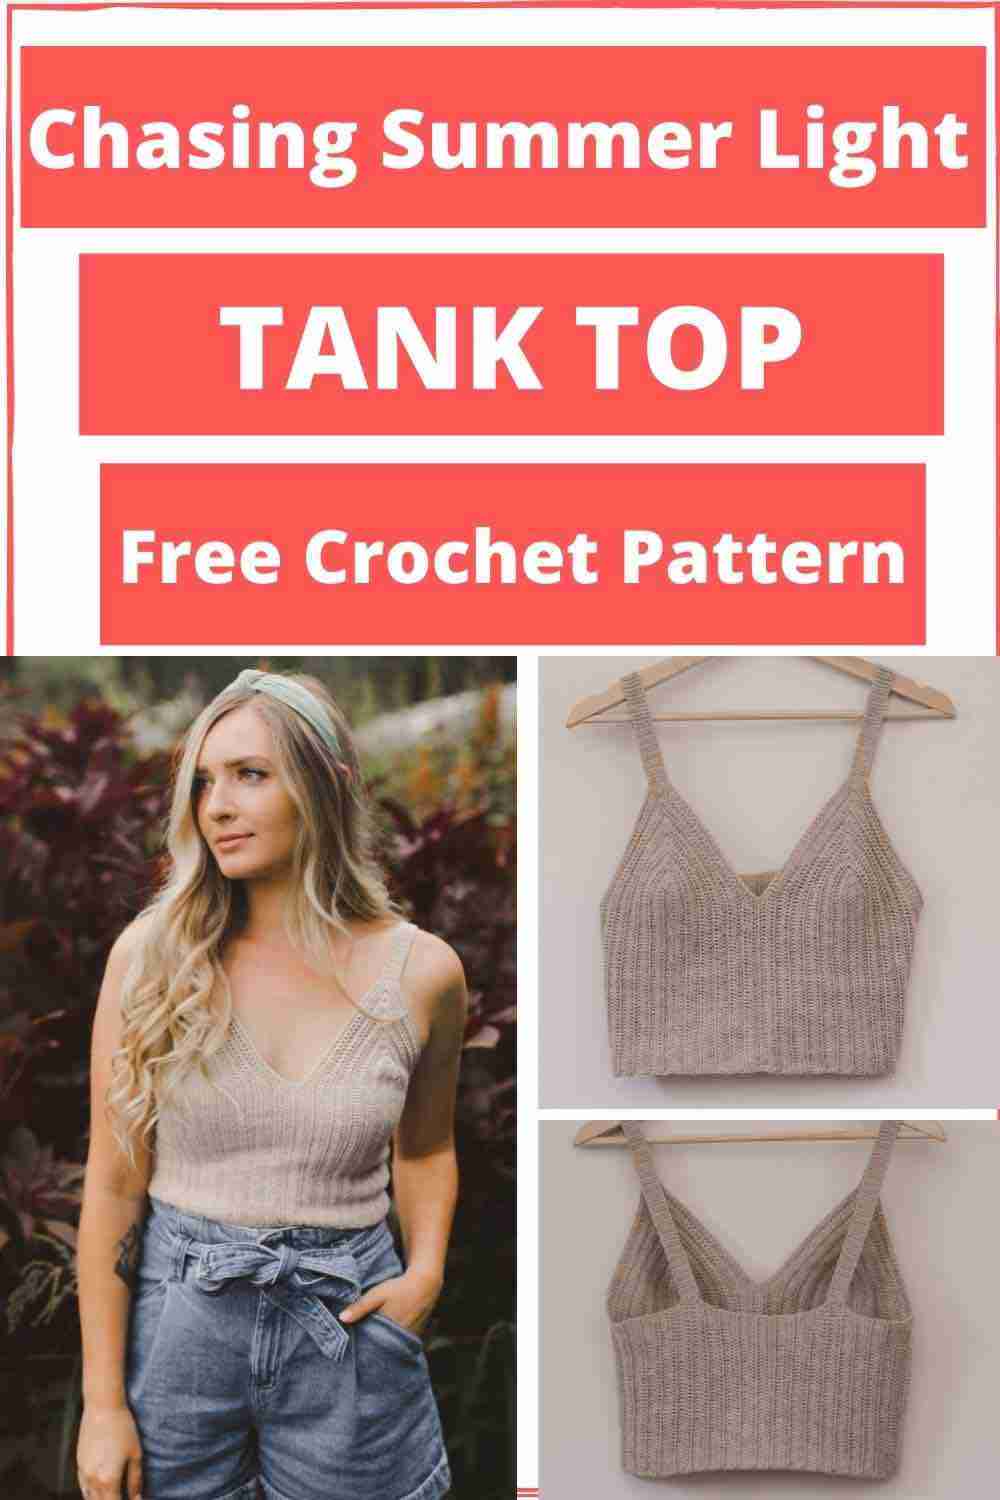 Crochet-Tank-Top-Free-pattern